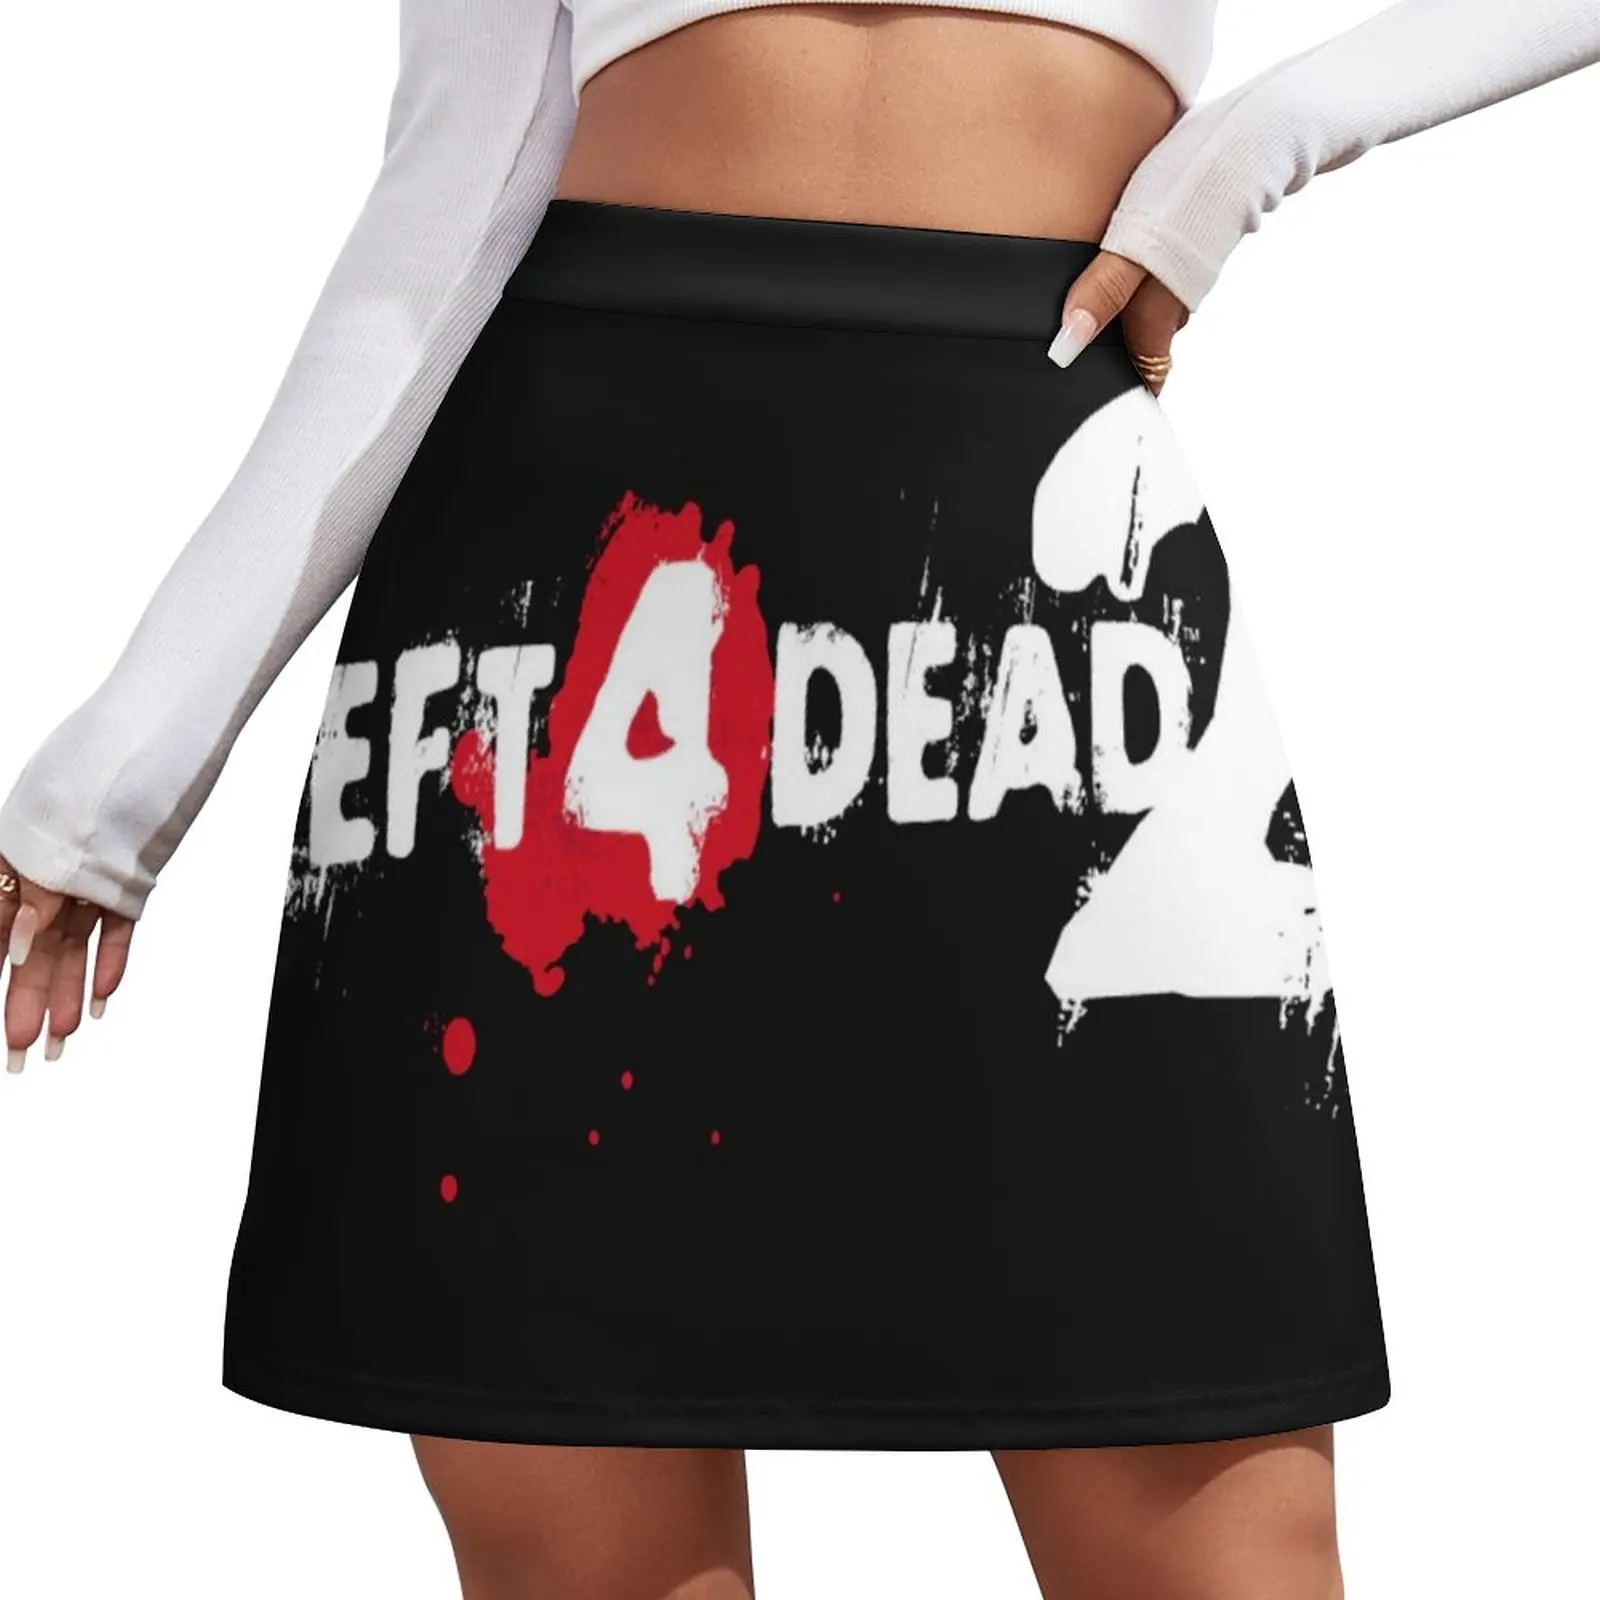 

LEFT 4 DEAD 2 LOGO Mini Skirt cute skirt mini skirt for women